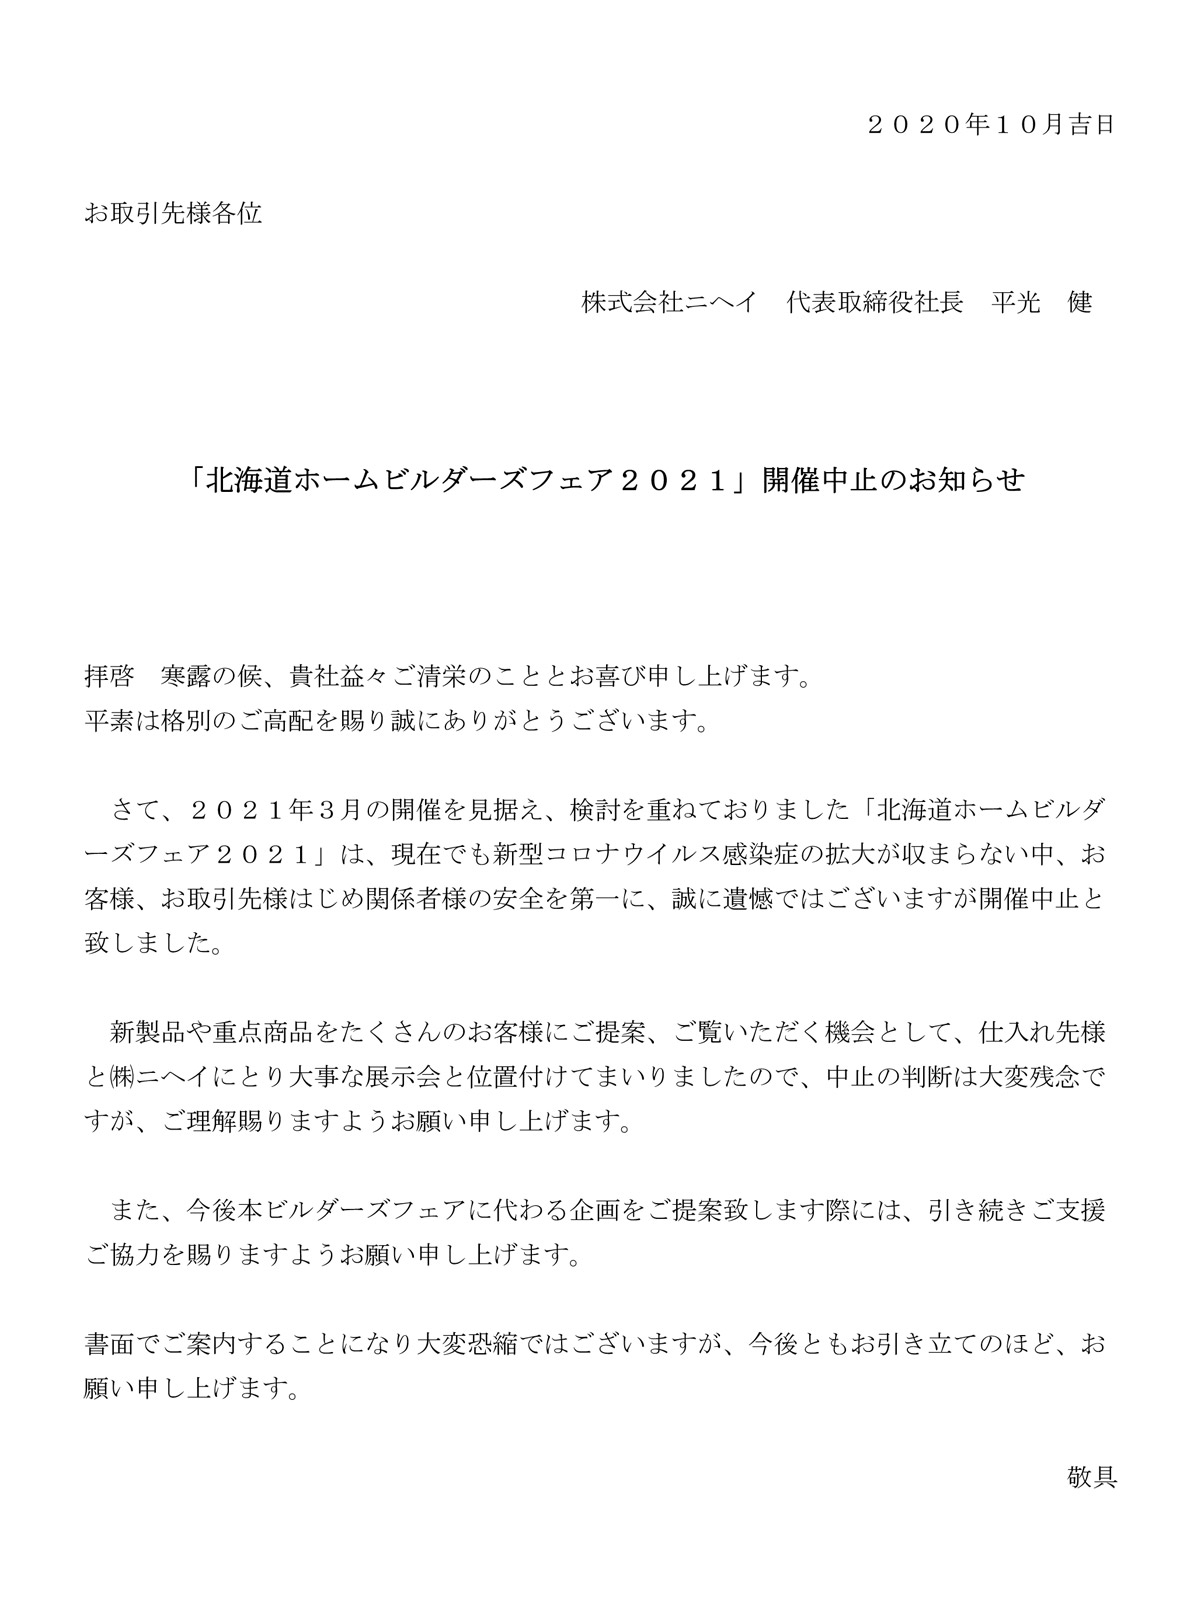 北海道ホームビルダーズフェア21 開催中止のお知らせ 株式会社ニヘイ